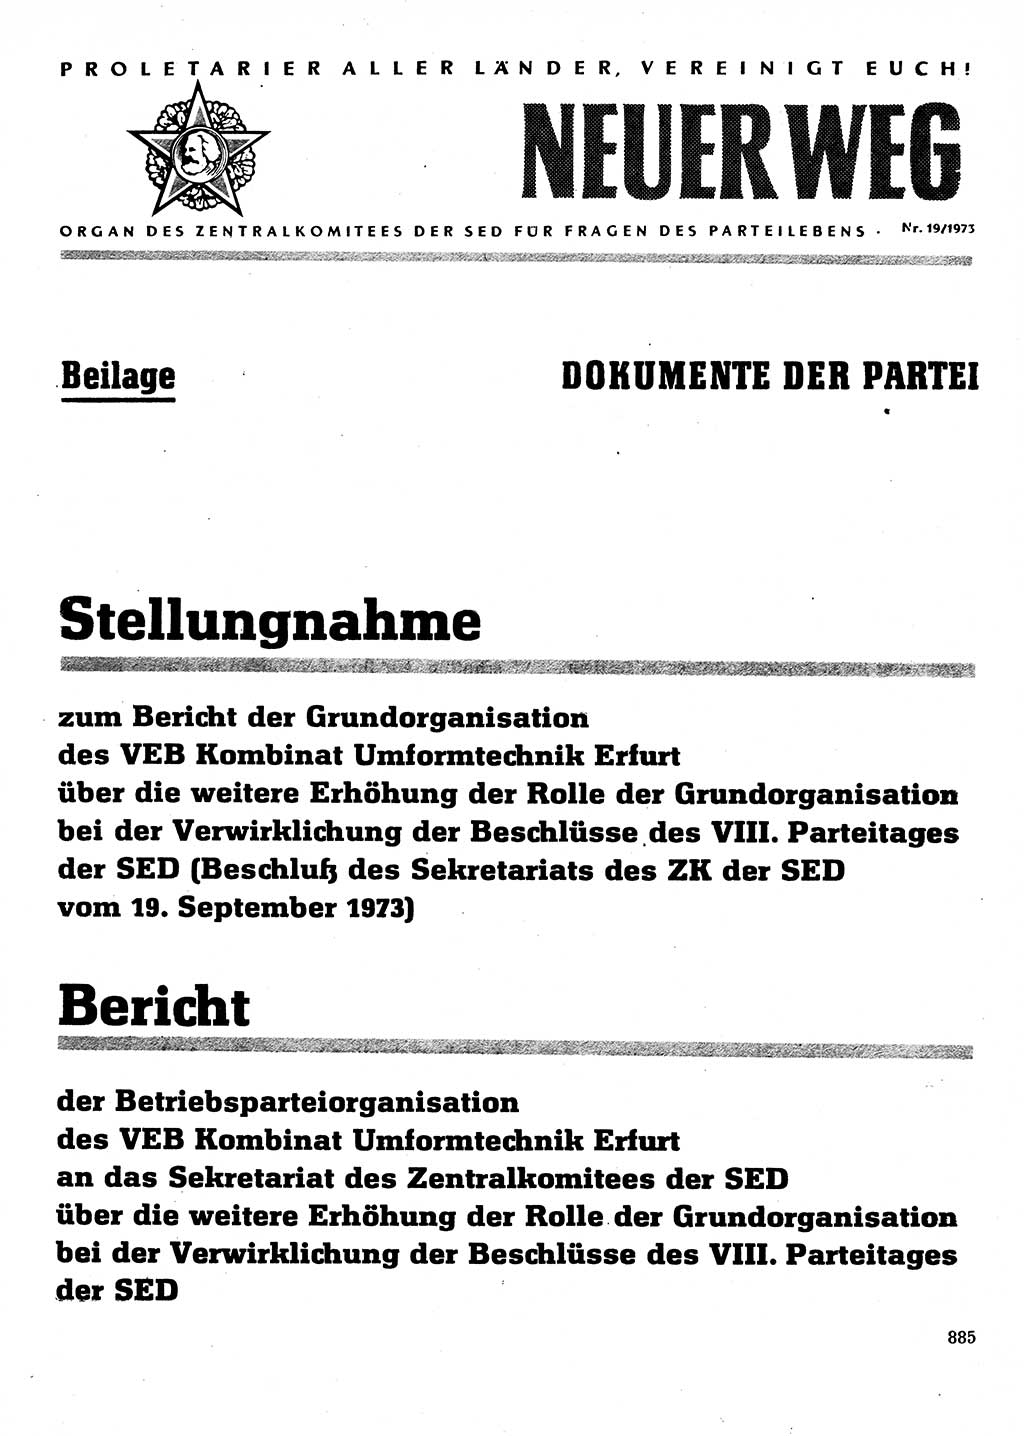 Neuer Weg (NW), Organ des Zentralkomitees (ZK) der SED (Sozialistische Einheitspartei Deutschlands) für Fragen des Parteilebens, 28. Jahrgang [Deutsche Demokratische Republik (DDR)] 1973, Seite 885 (NW ZK SED DDR 1973, S. 885)